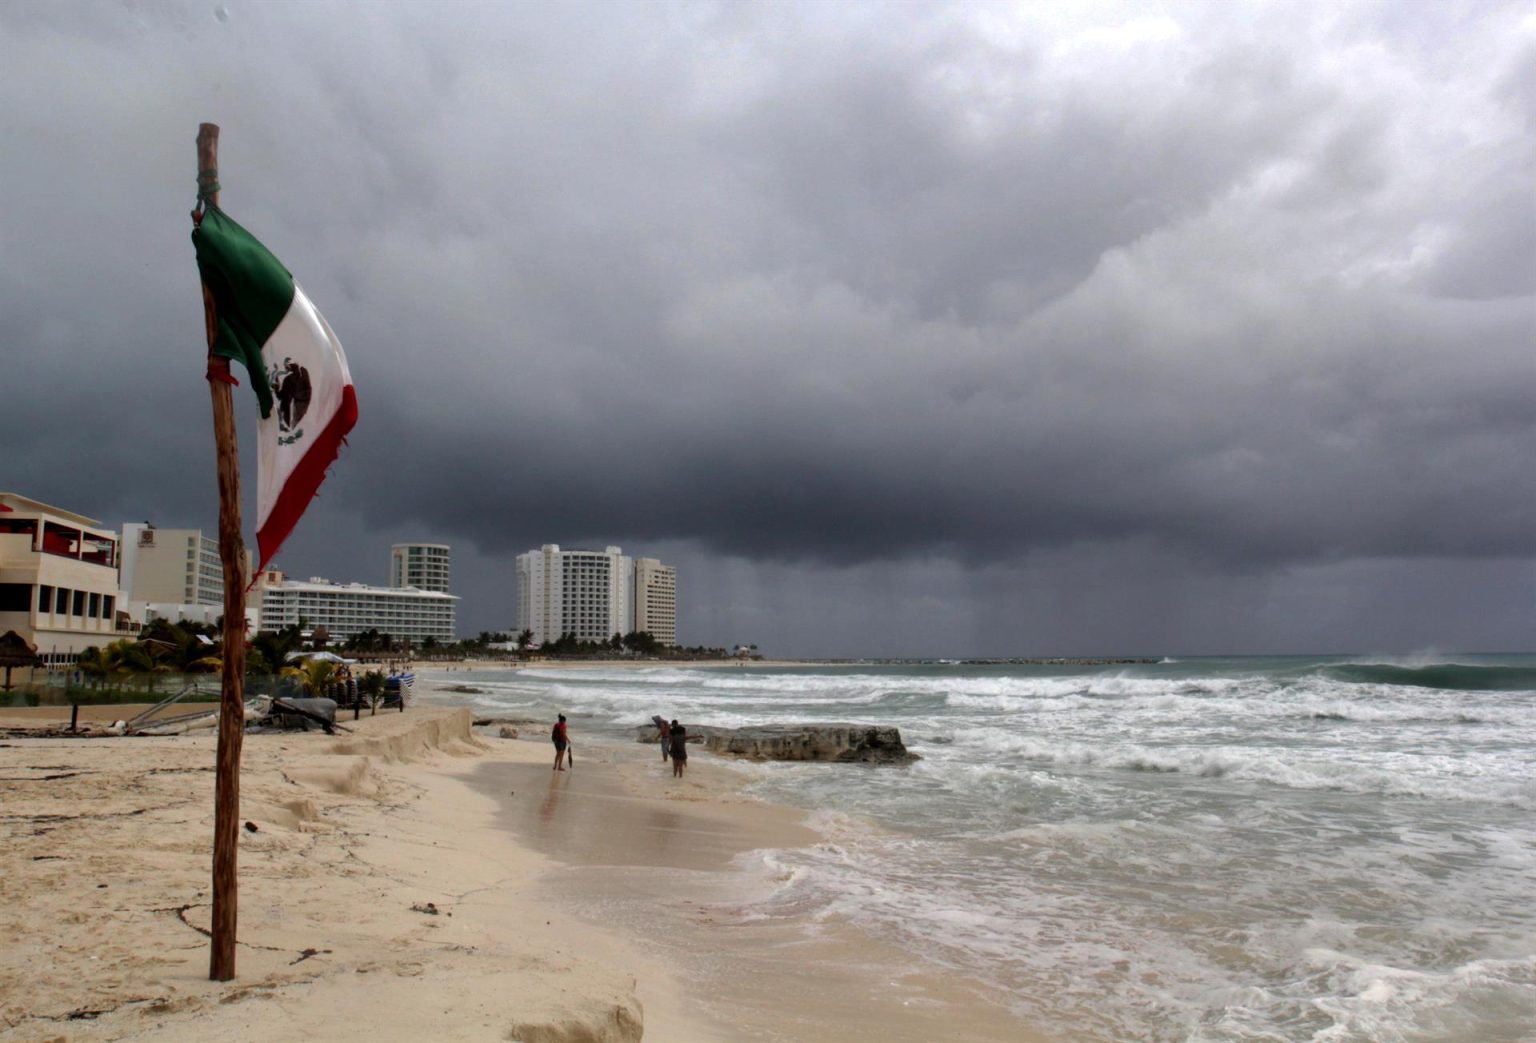 Fotografía de archivo de los efectos de una depresión marítima, consecuencia del paso de un huracán en el estado de Quintana Roo (México). EFE/Alonso Cupul